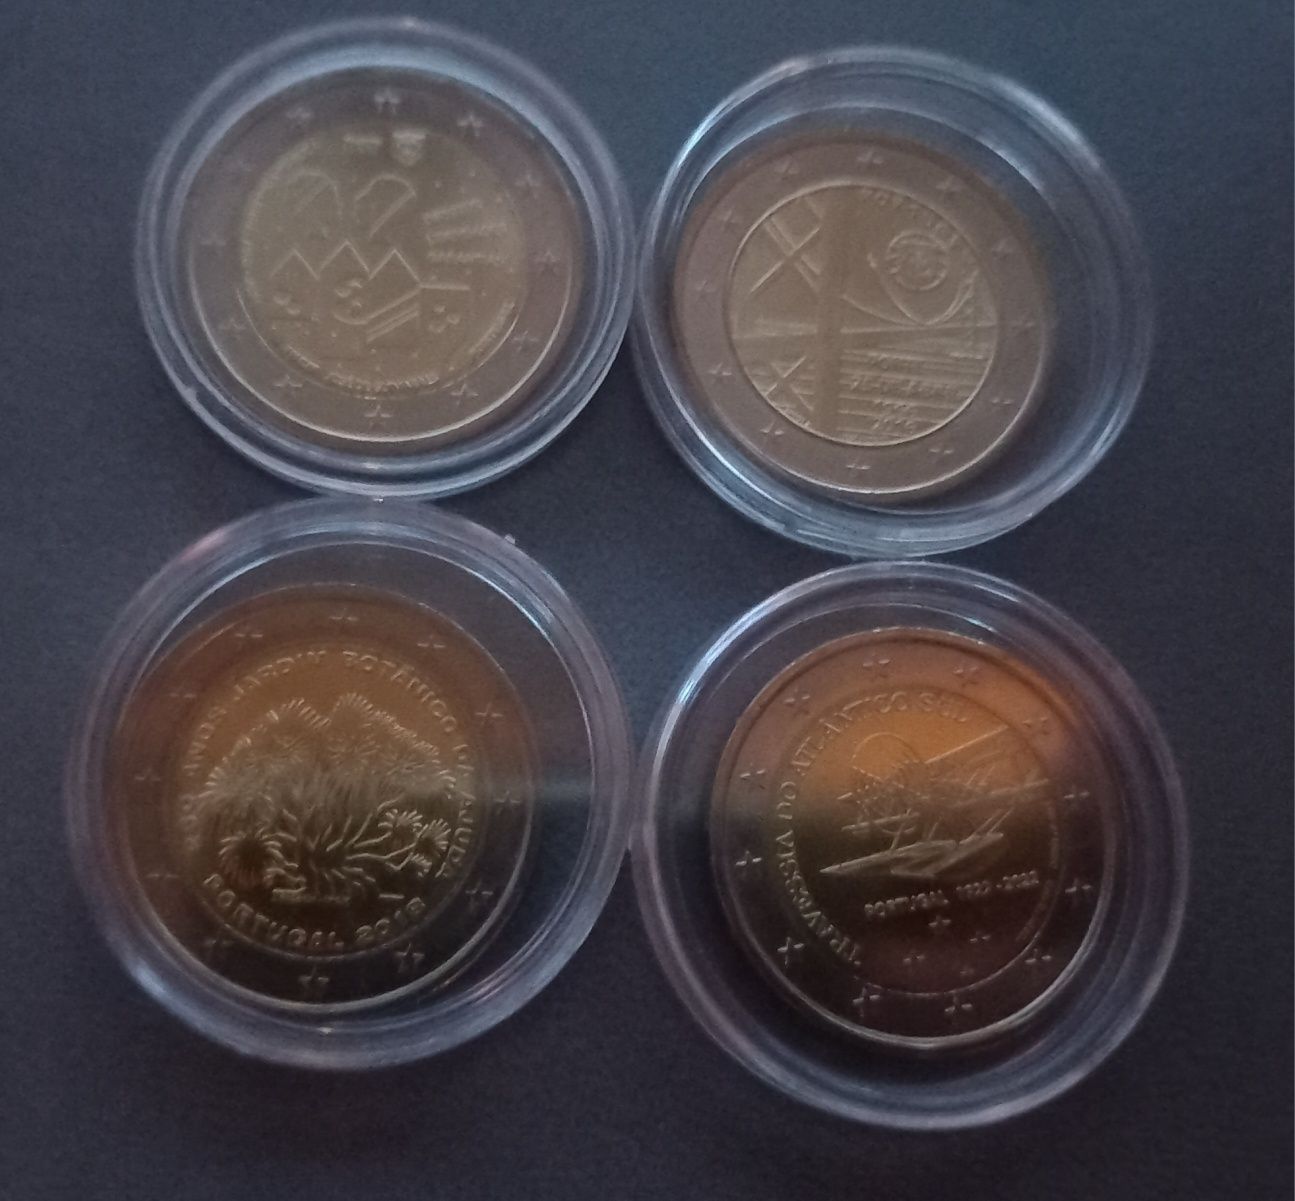 9 monet okolicznościowych 2 euro nowe